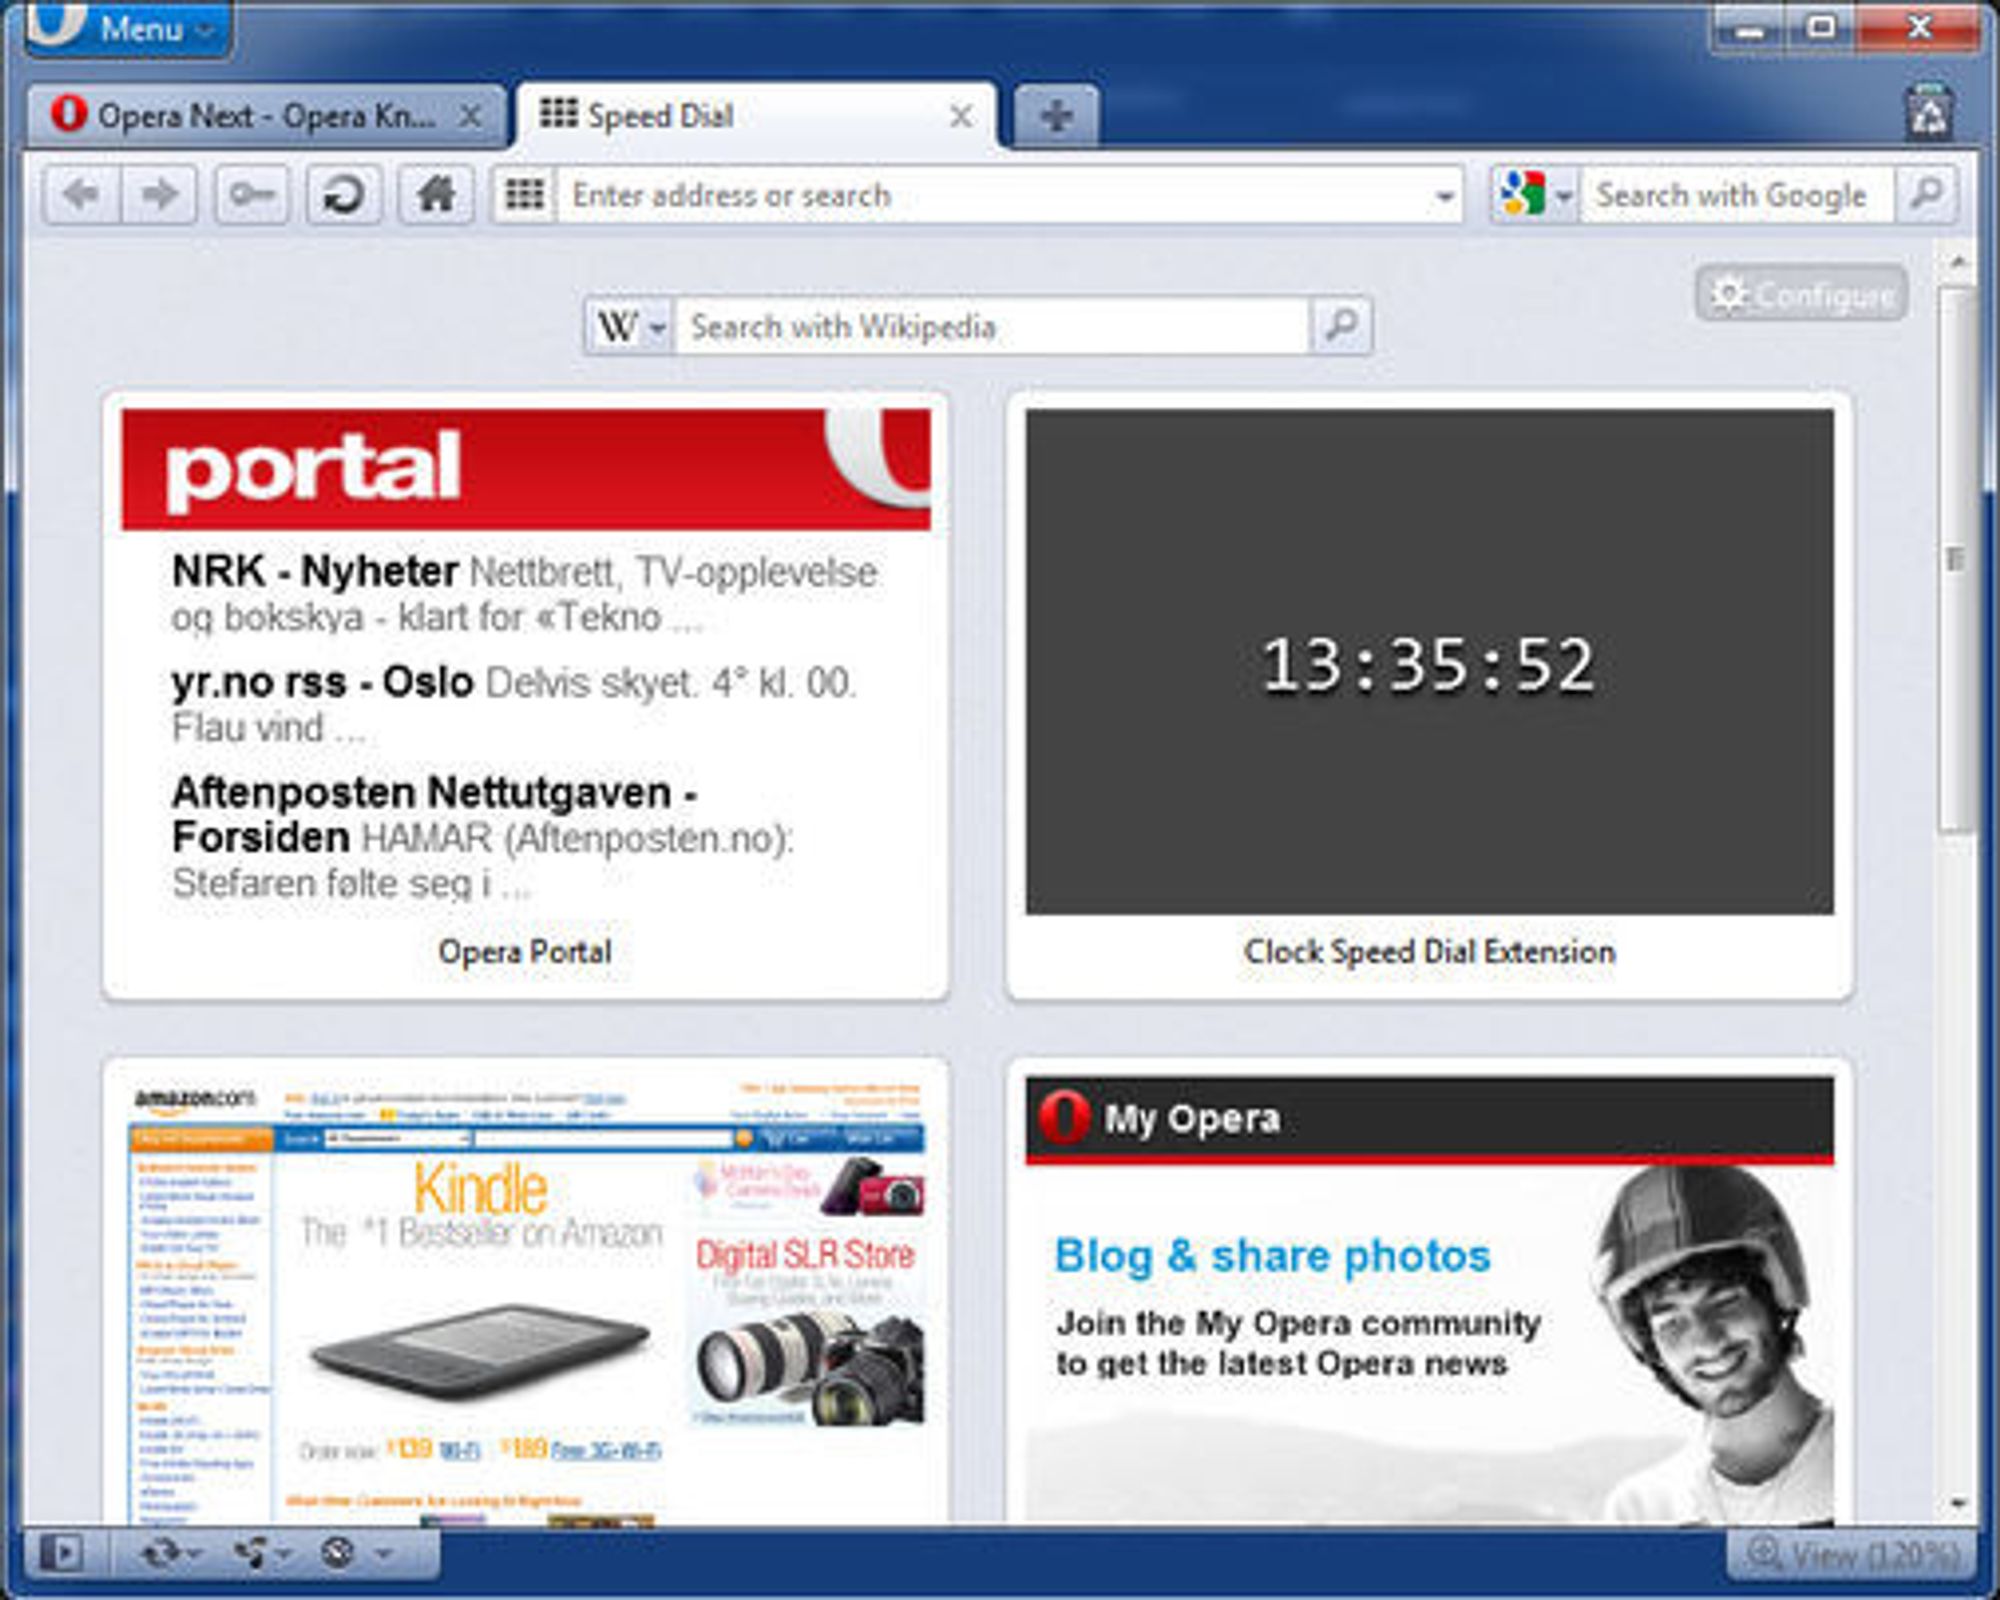 Klokken som vises er en utvidelse til Speed Dial. Slike utvidelser er en nyhet i Opera 11.50.